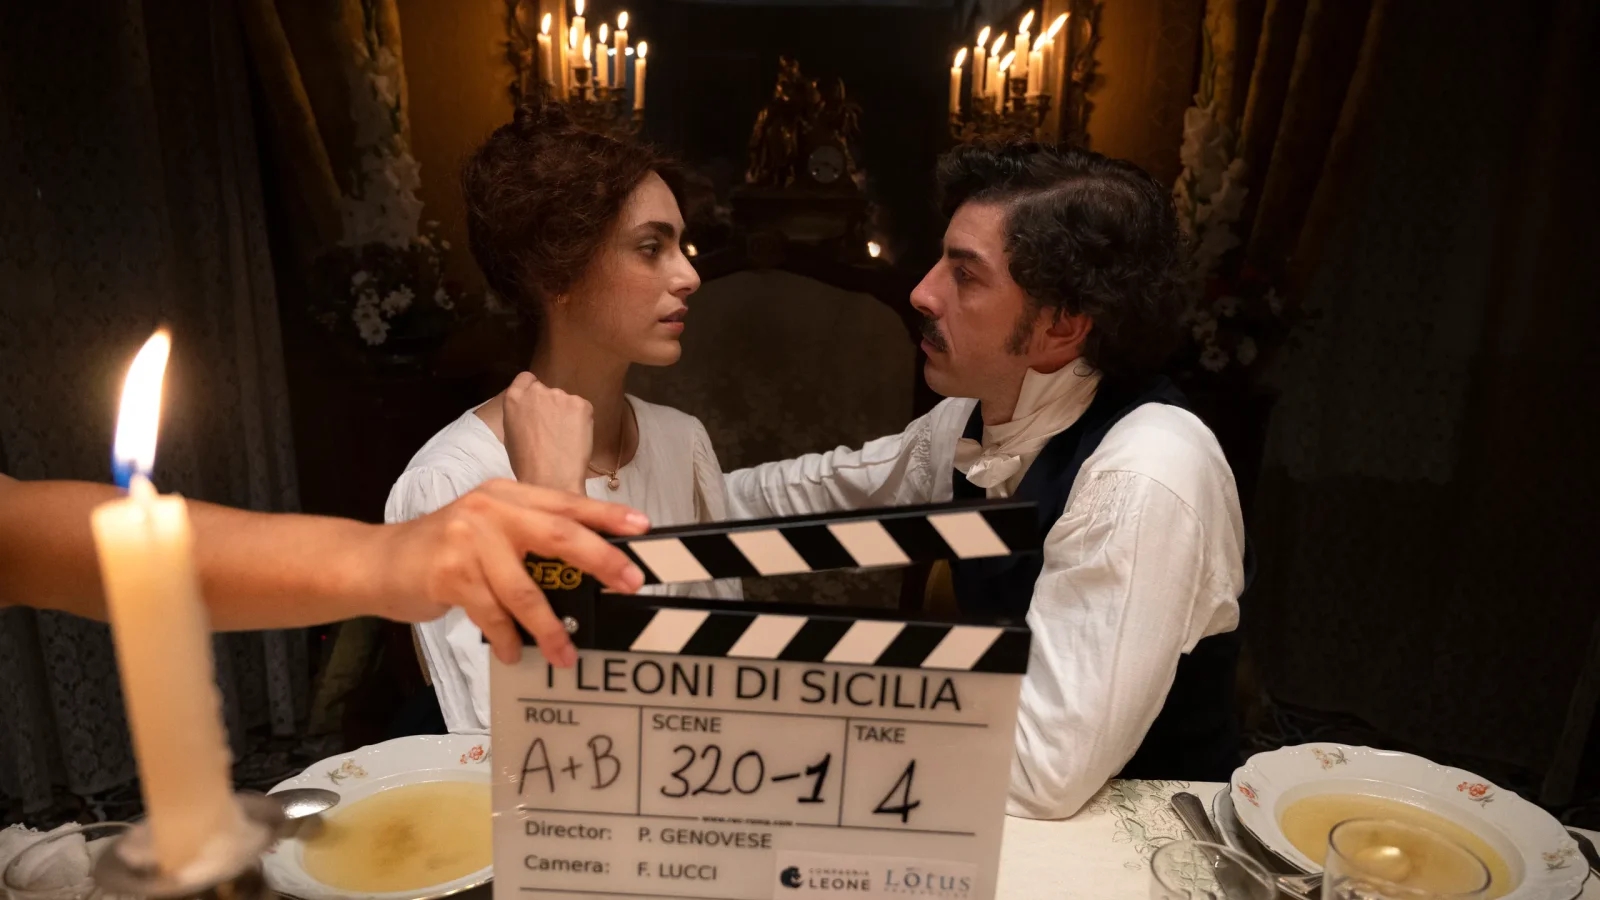 I Leoni di Sicilia: i protagonisti della serie in versione contemporanea nel video diretto da Paolo Genovese